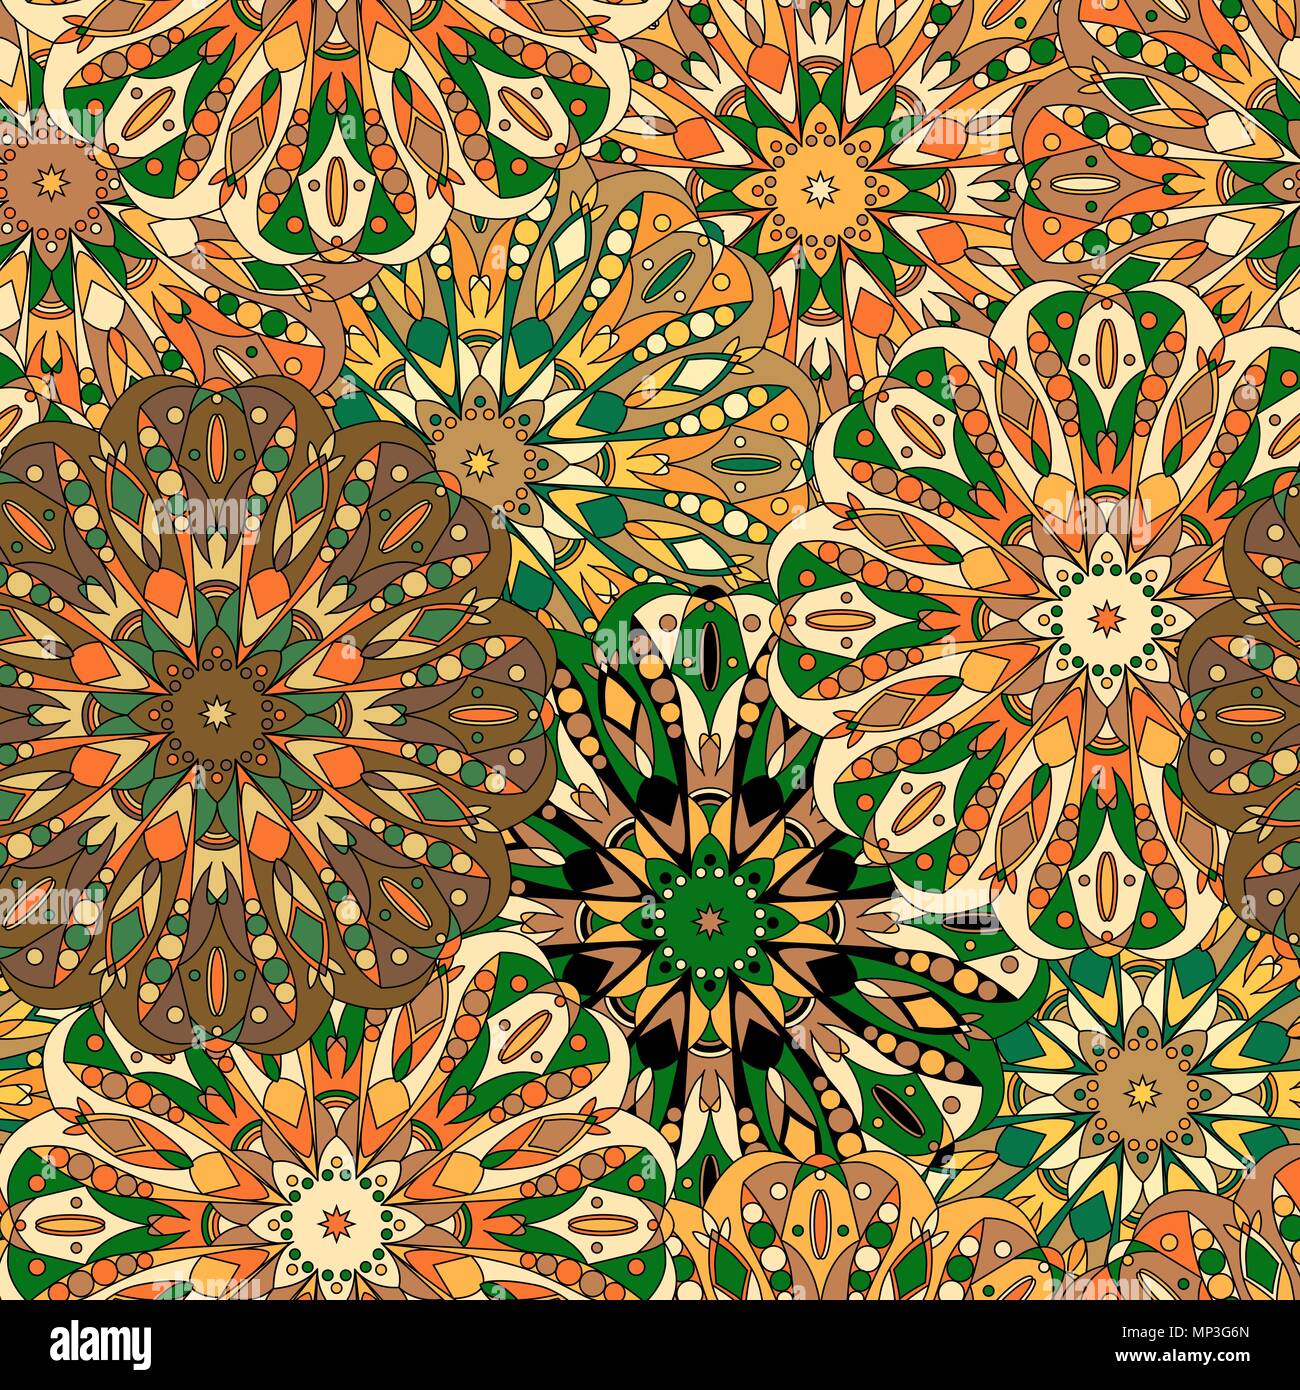 Vintage dekorative Muster. Islam, arabische, indische, osmanische Motive. Perfekt für den Druck auf Stoff oder Papier. Kann für die Grußkarte oder Broschüre b verwendet werden. Stock Vektor